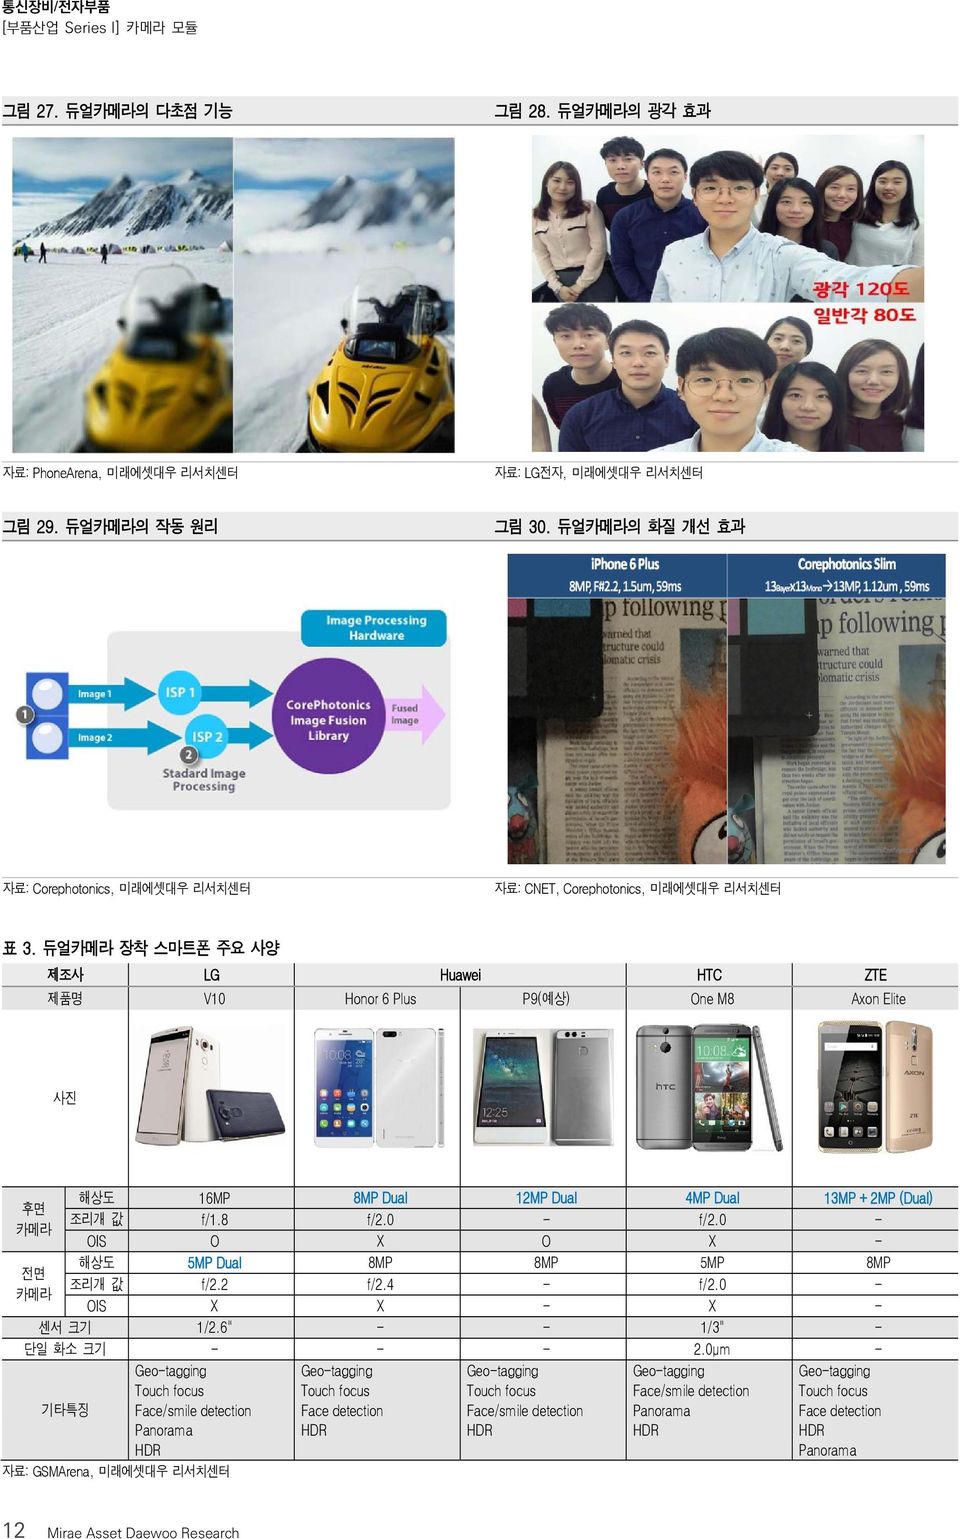 듀얼카메라 장착 스마트폰 주요 사양 제조사 LG Huawei HTC ZTE 제품명 V10 Honor 6 Plus P9(예상) One M8 Axon Elite 사진 후면 카메라 해상도 16MP 8MP Dual 12MP Dual 4MP Dual 13MP + 2MP (Dual) 조리개 값 f/1.8 f/2.0 - f/2.